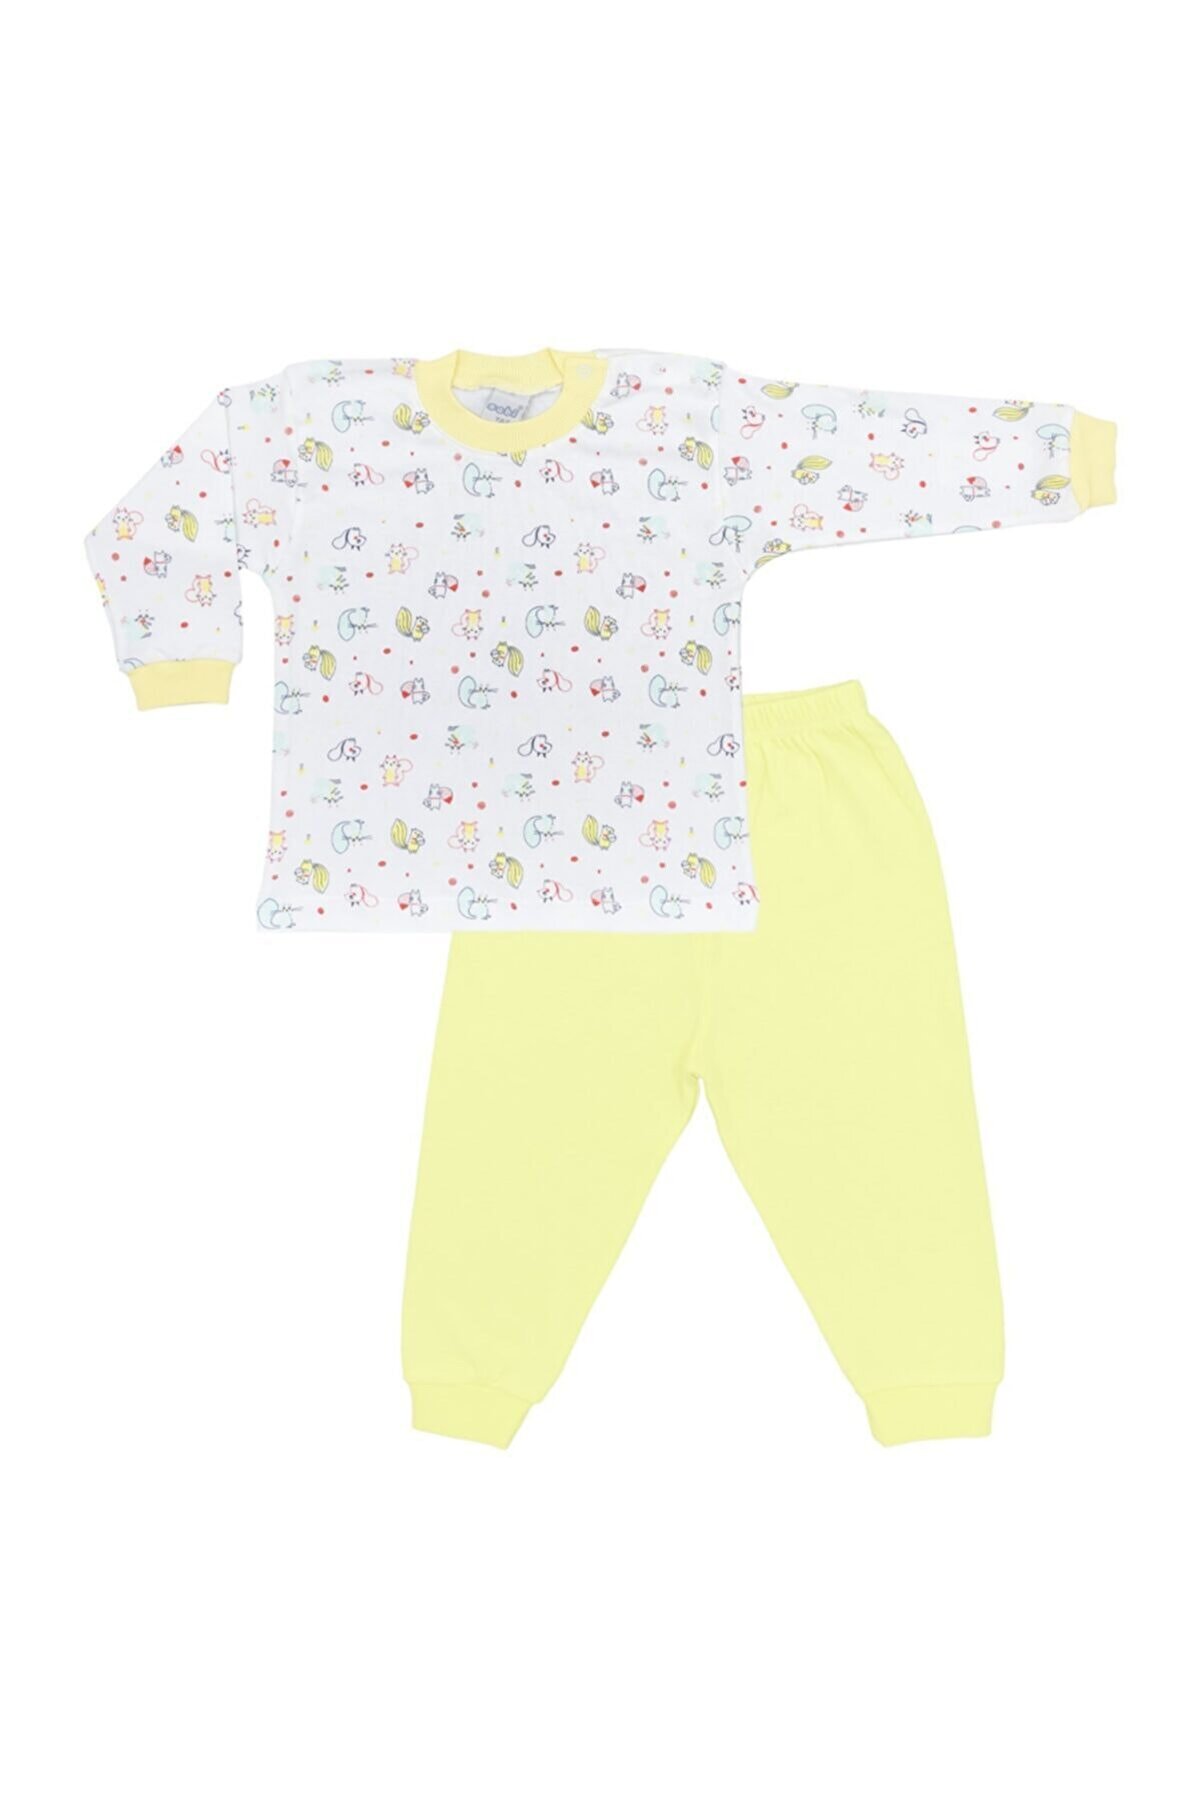 Sincap Baskılı Bebek Pijama Takımı 2416